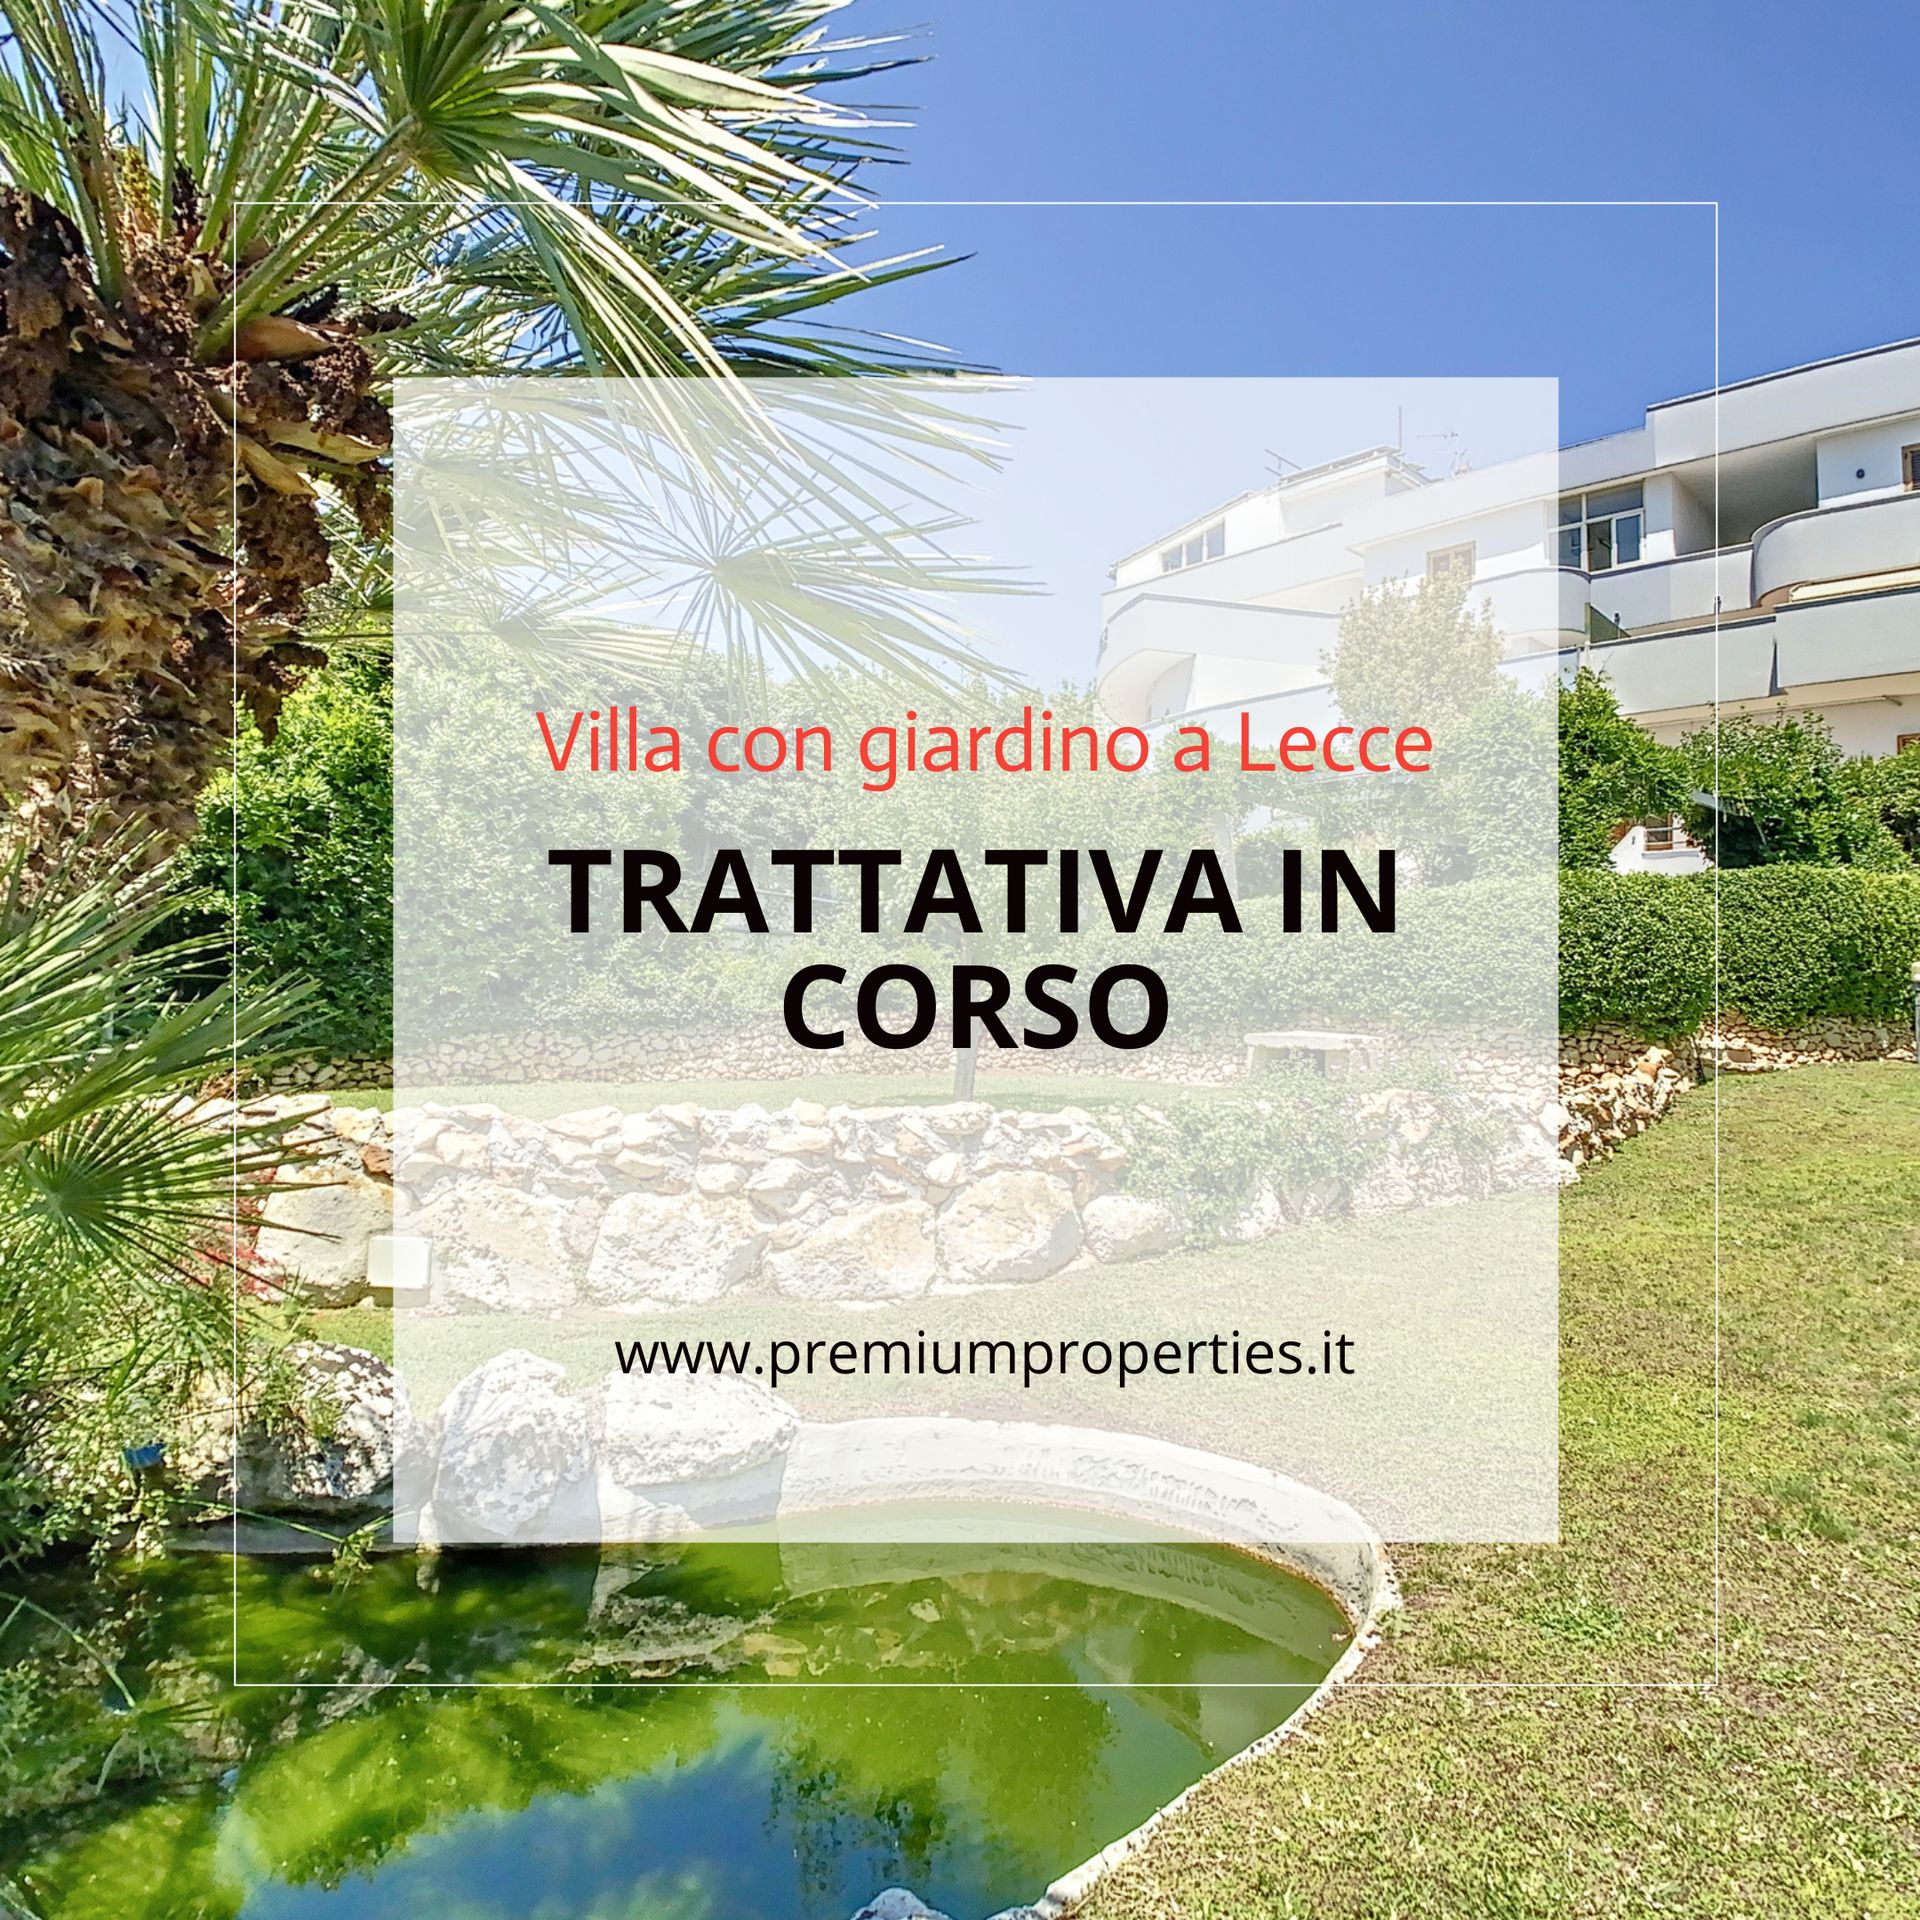 For sale villa in city Lecce Puglia